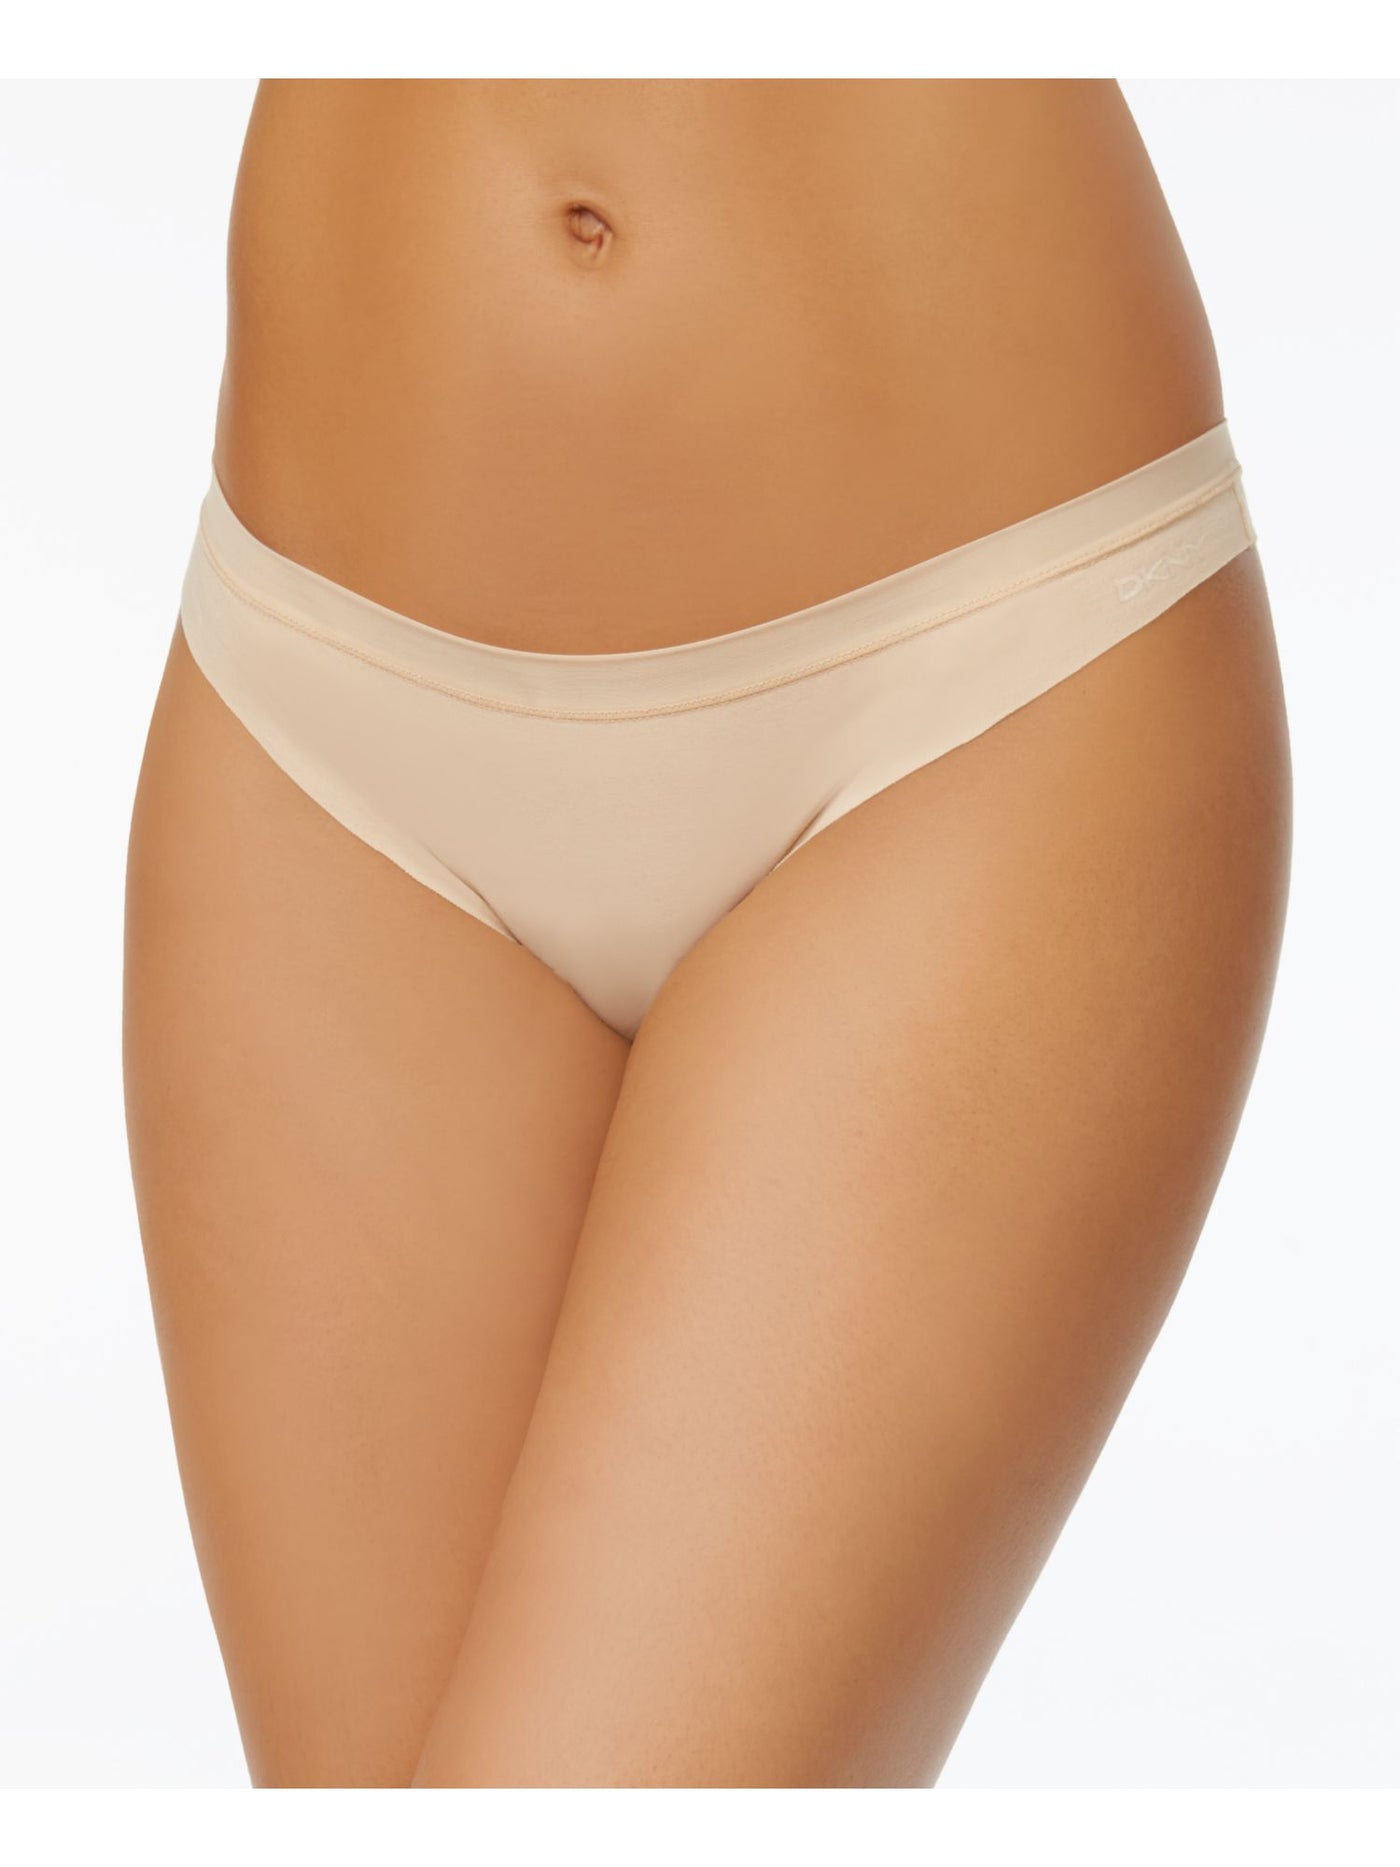 DKNY Intimates Beige Cotton Thong Underwear L